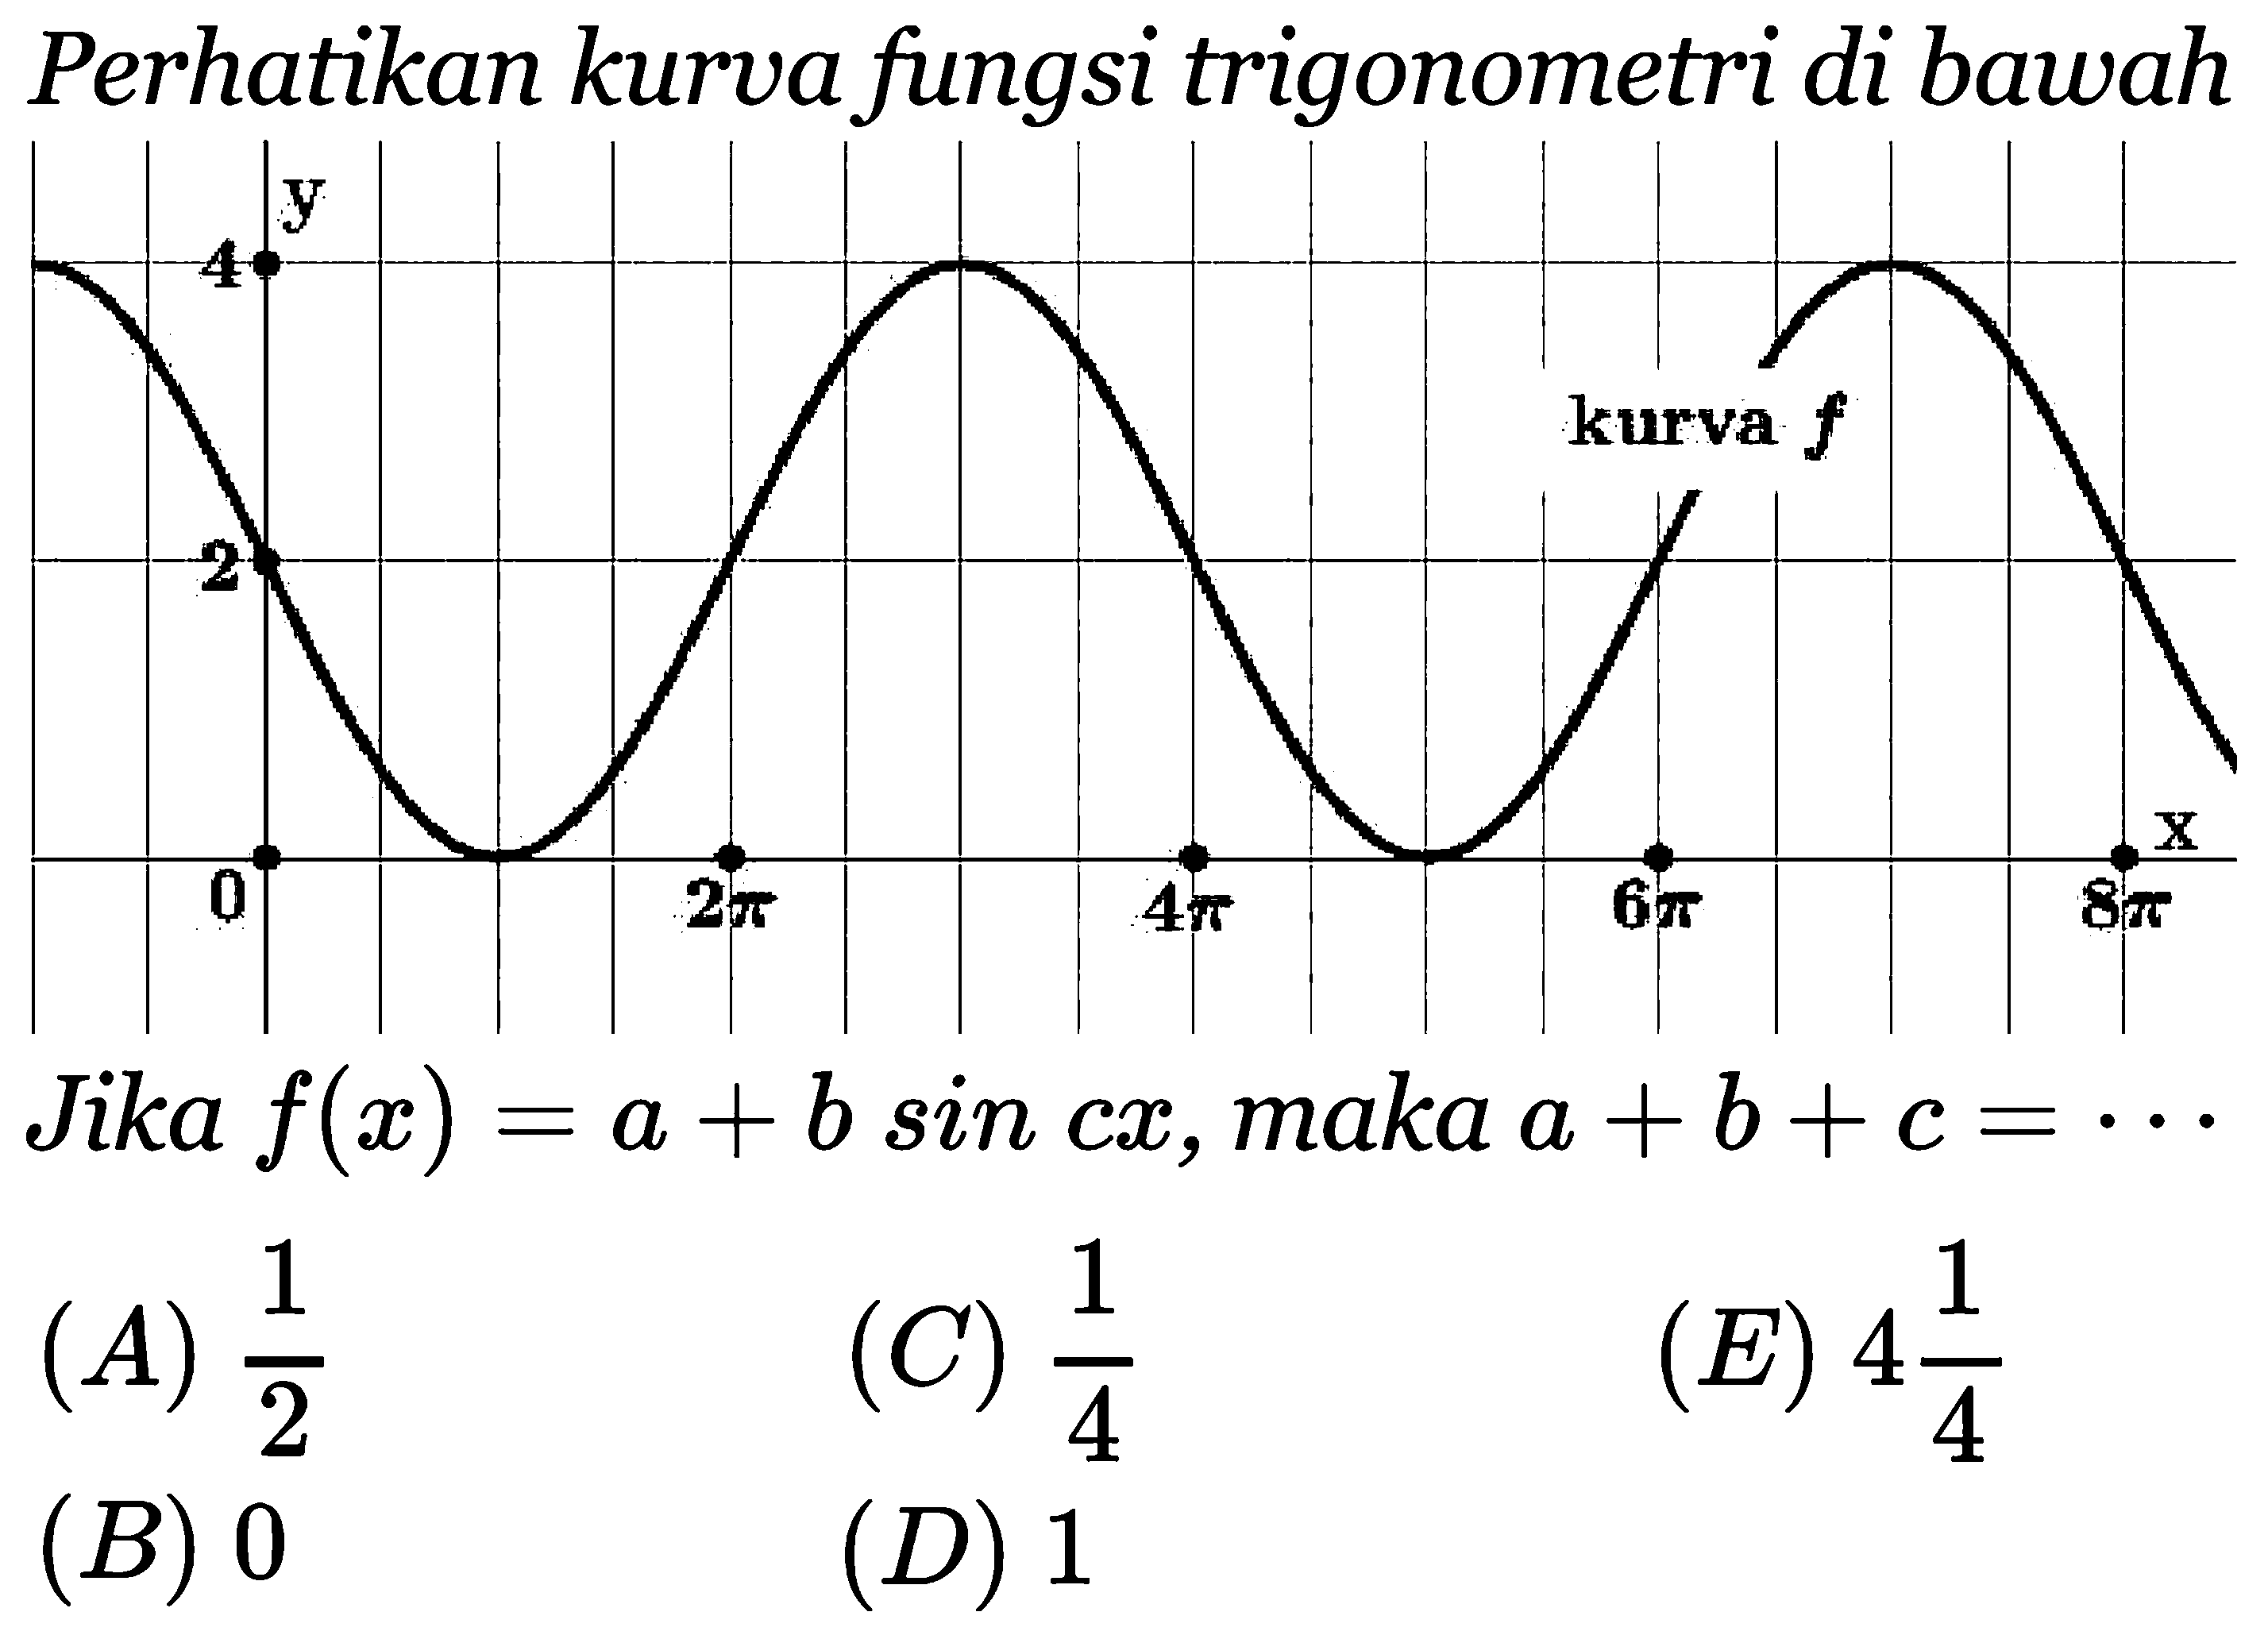 Perhatikan kurva fungsi trigonometri di bawah kurva Jika f(x) = a + b sin cx, maka a +b+c